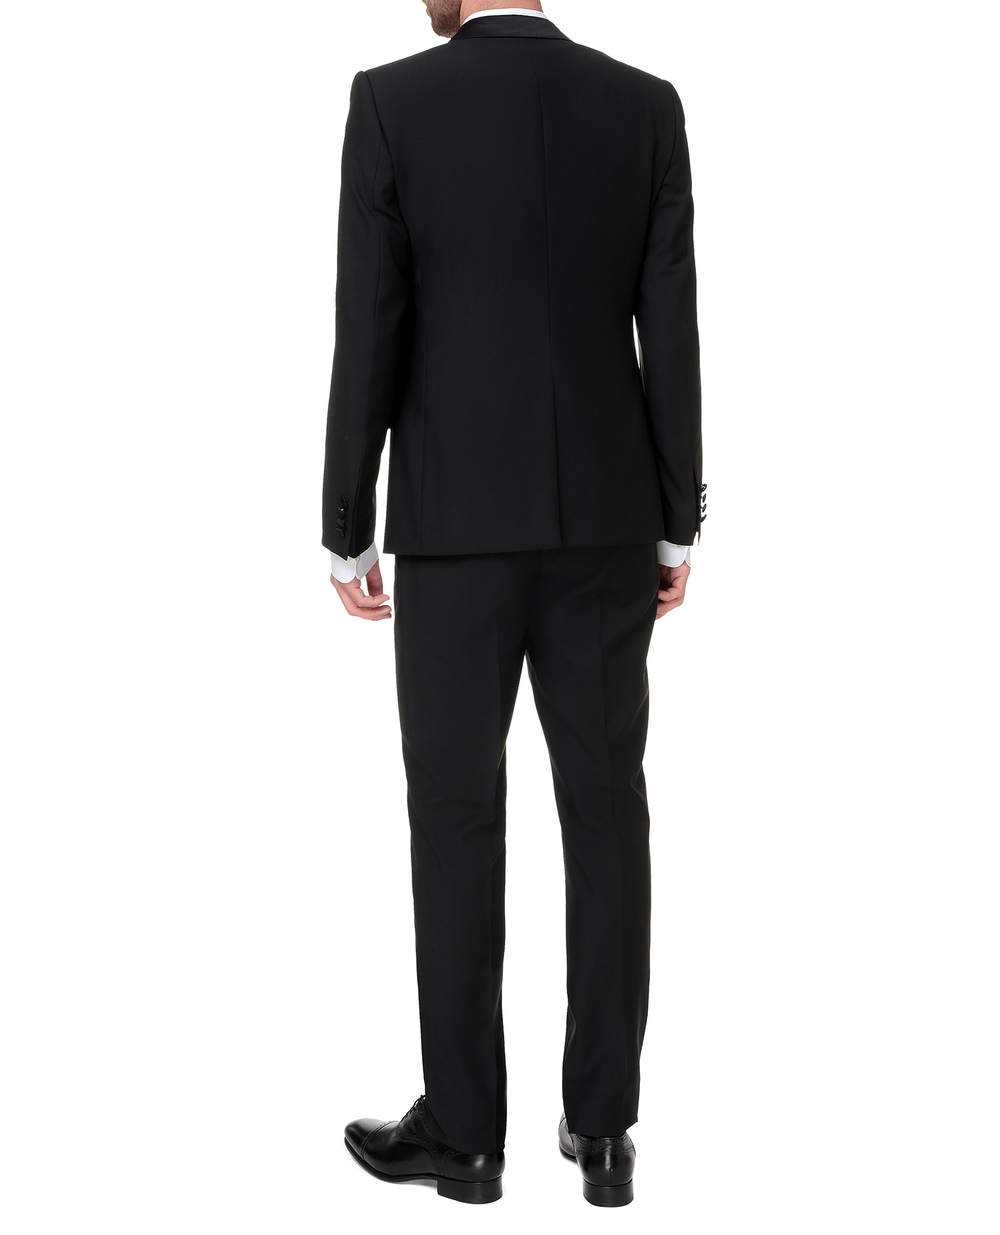 Шерстяной костюм Martini (пиджак, жилет, брюки) Dolce&Gabbana GKBEMT-FU2Z8, черный цвет • Купить в интернет-магазине Kameron